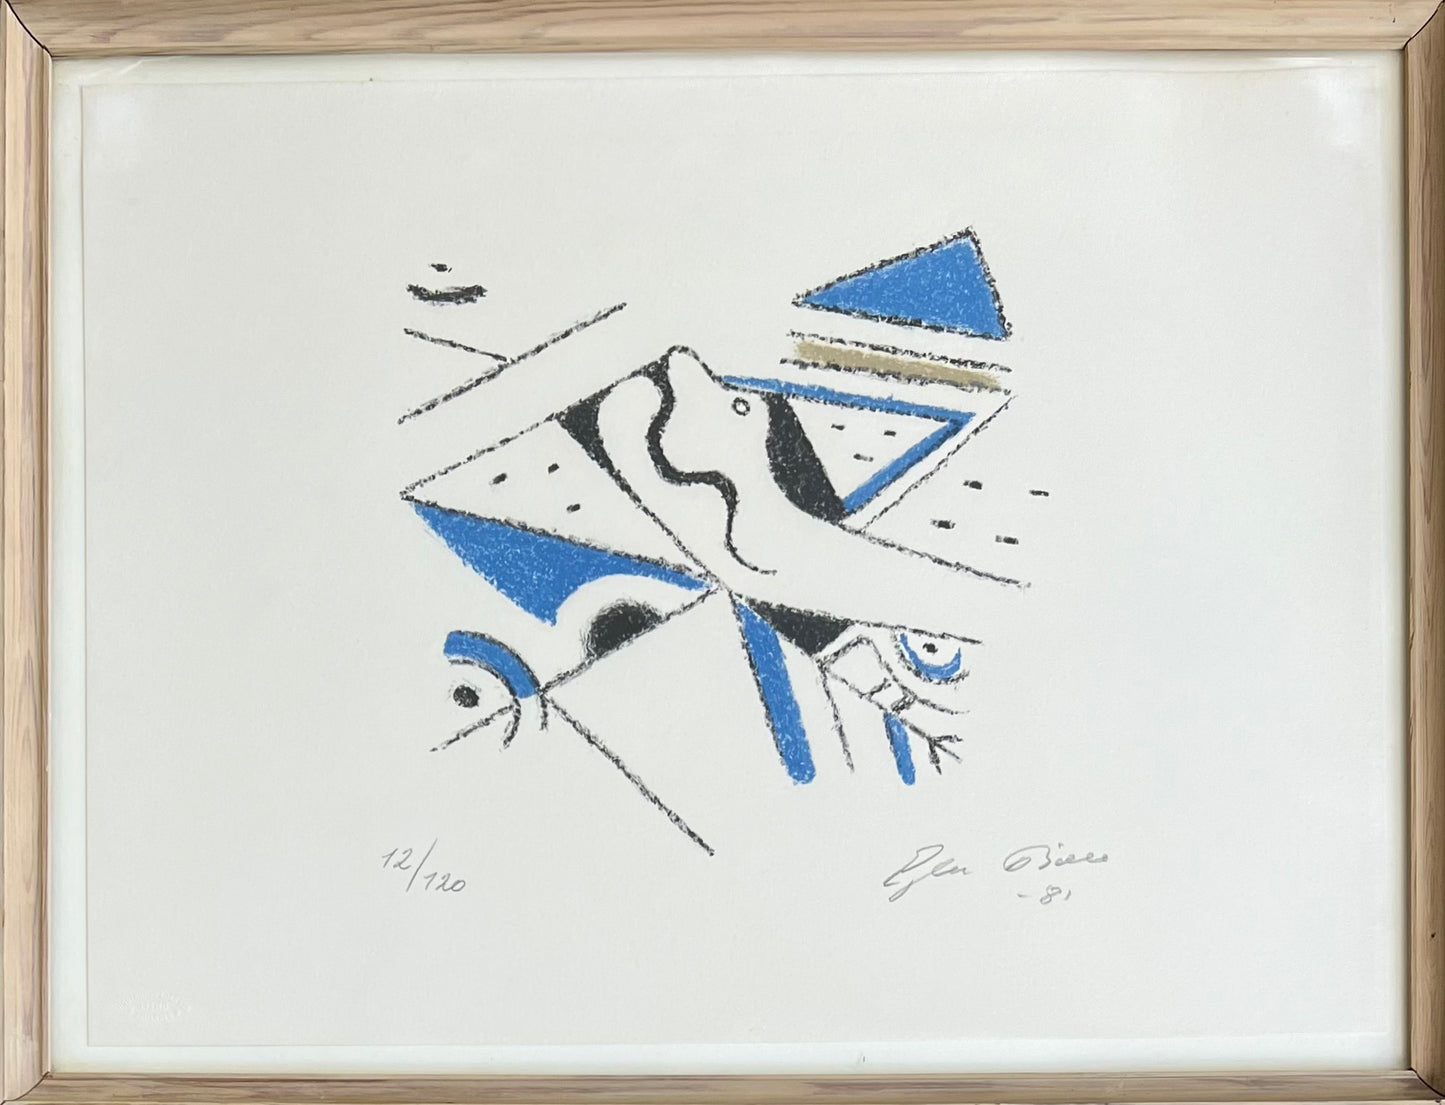 Ejler Bille. Composition, 1981